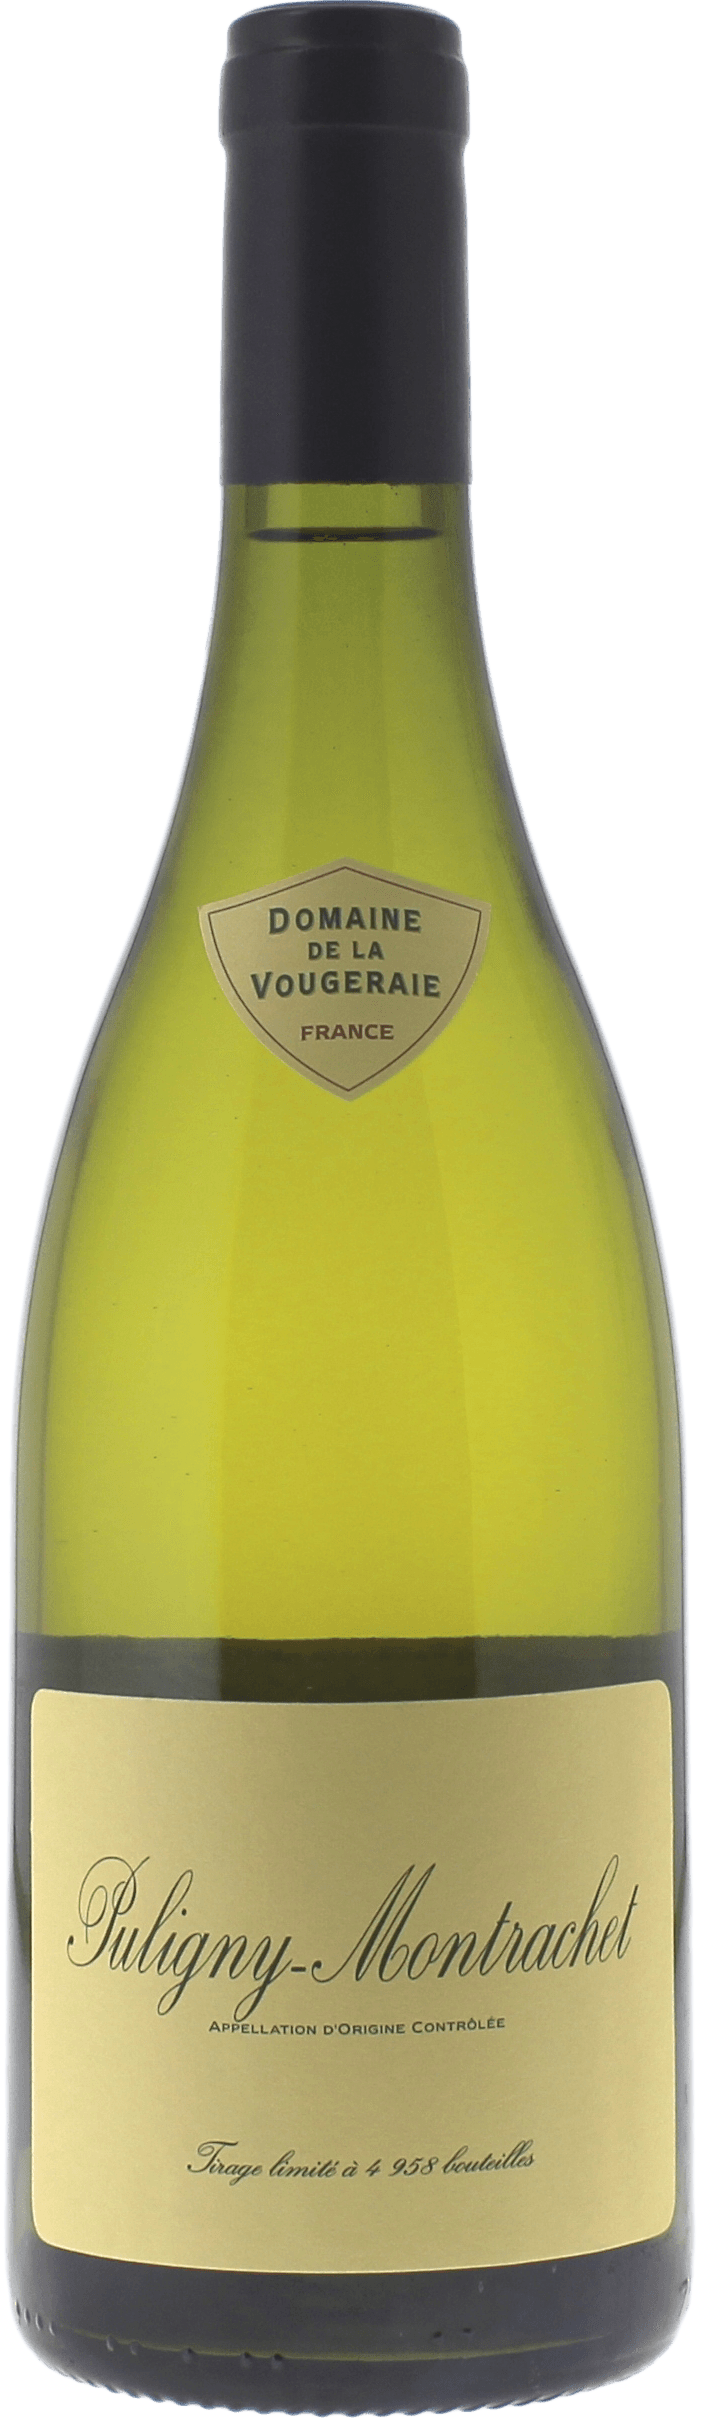 Puligny montrachet 2015 Domaine VOUGERAIE, Bourgogne blanc